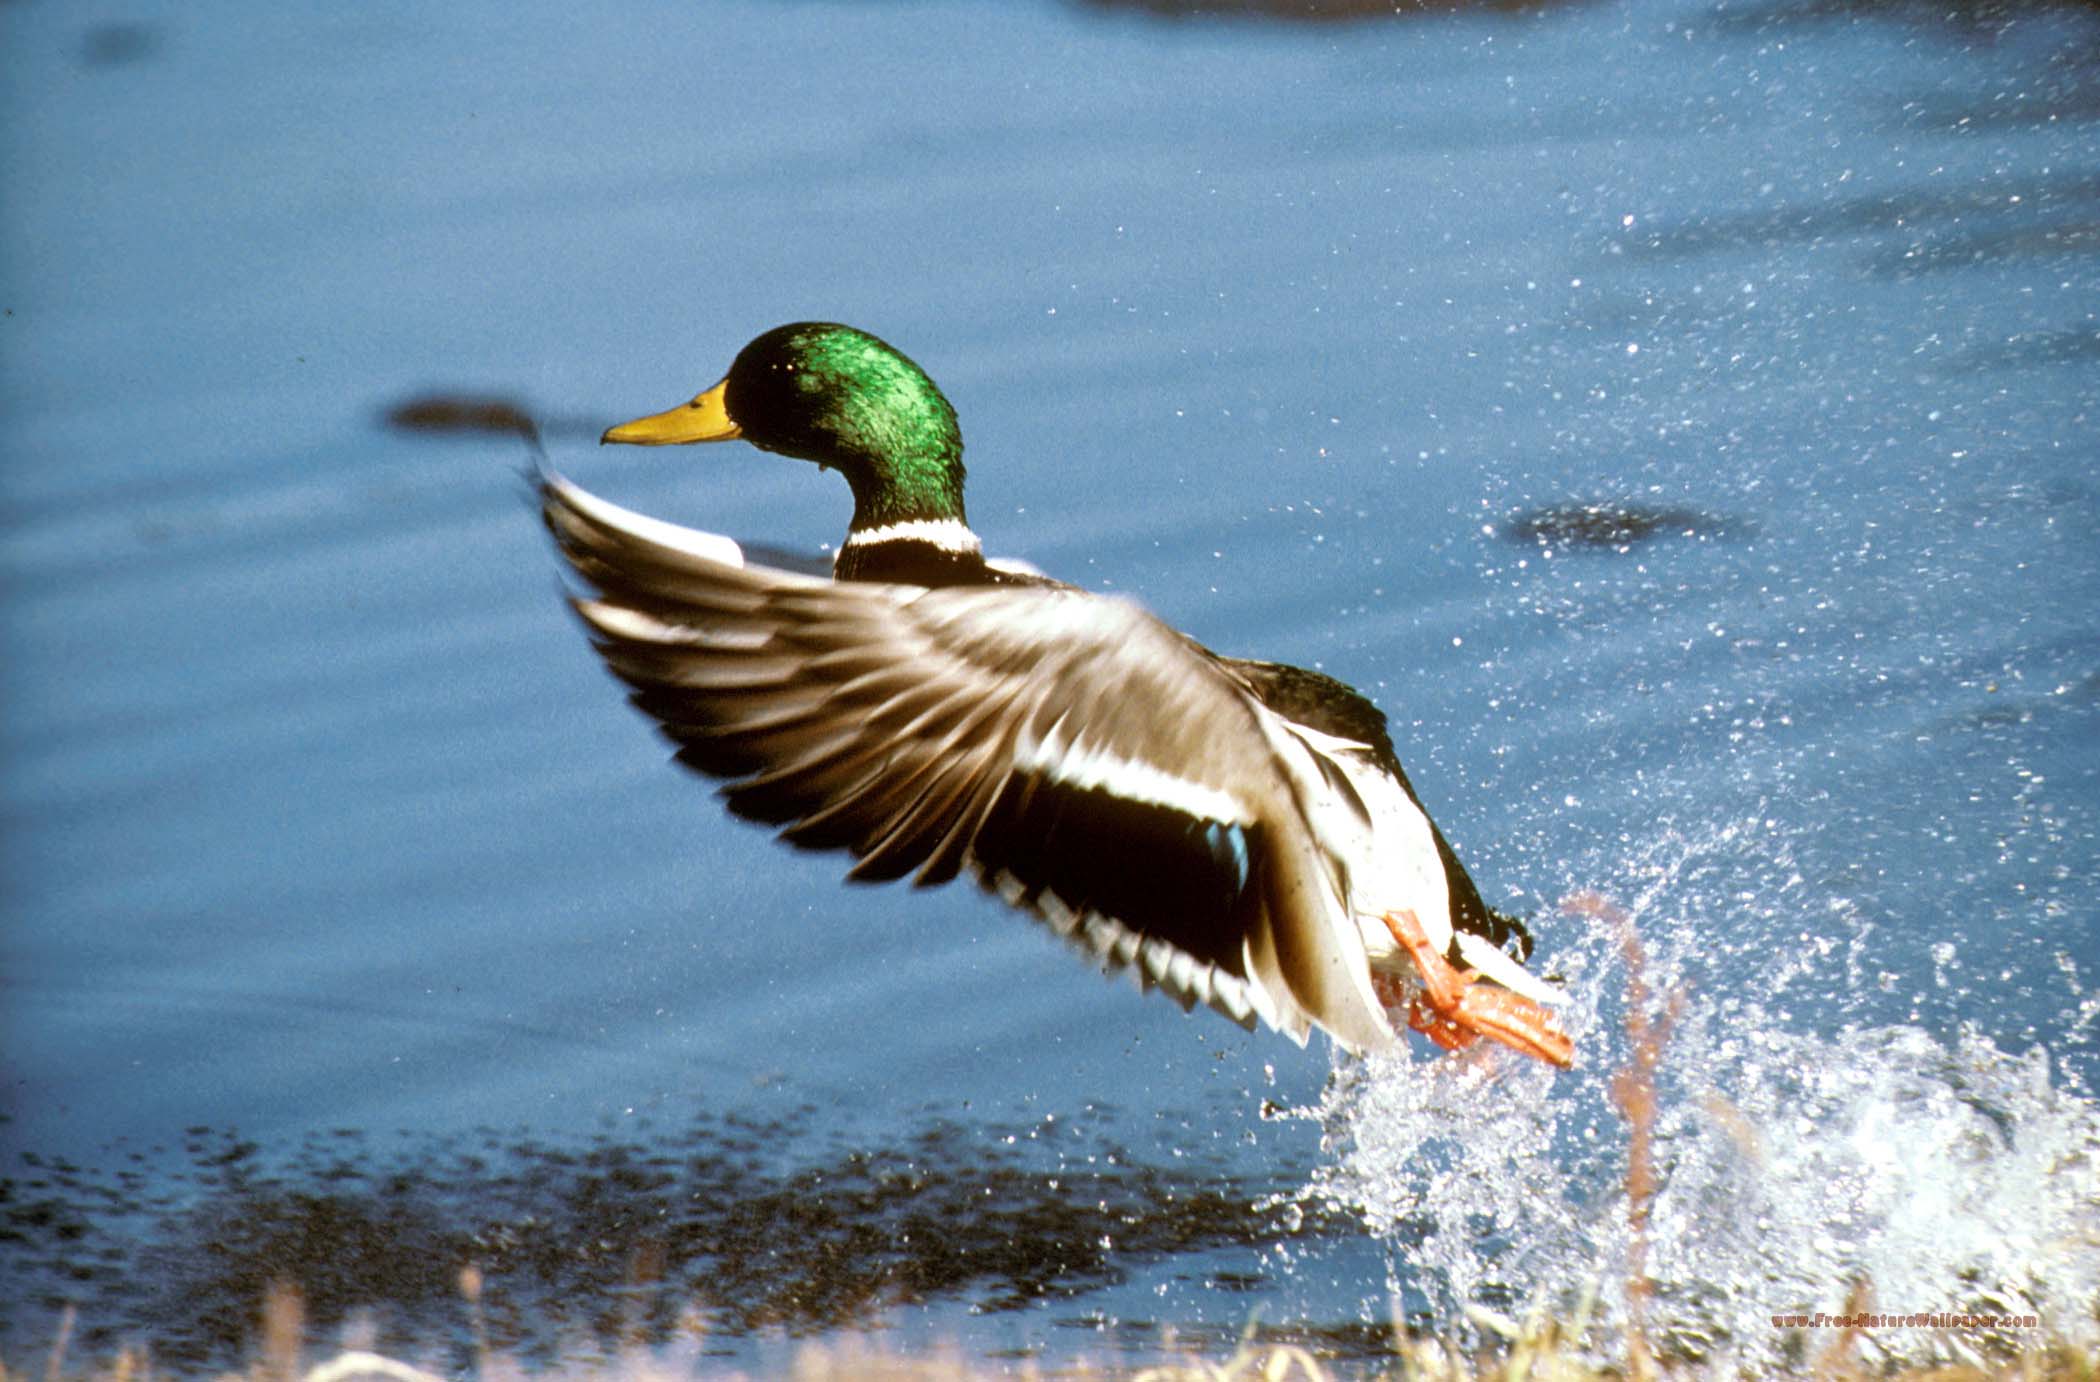 Mallard Take Off Image. Duck Nature Picture. Public Domain Image